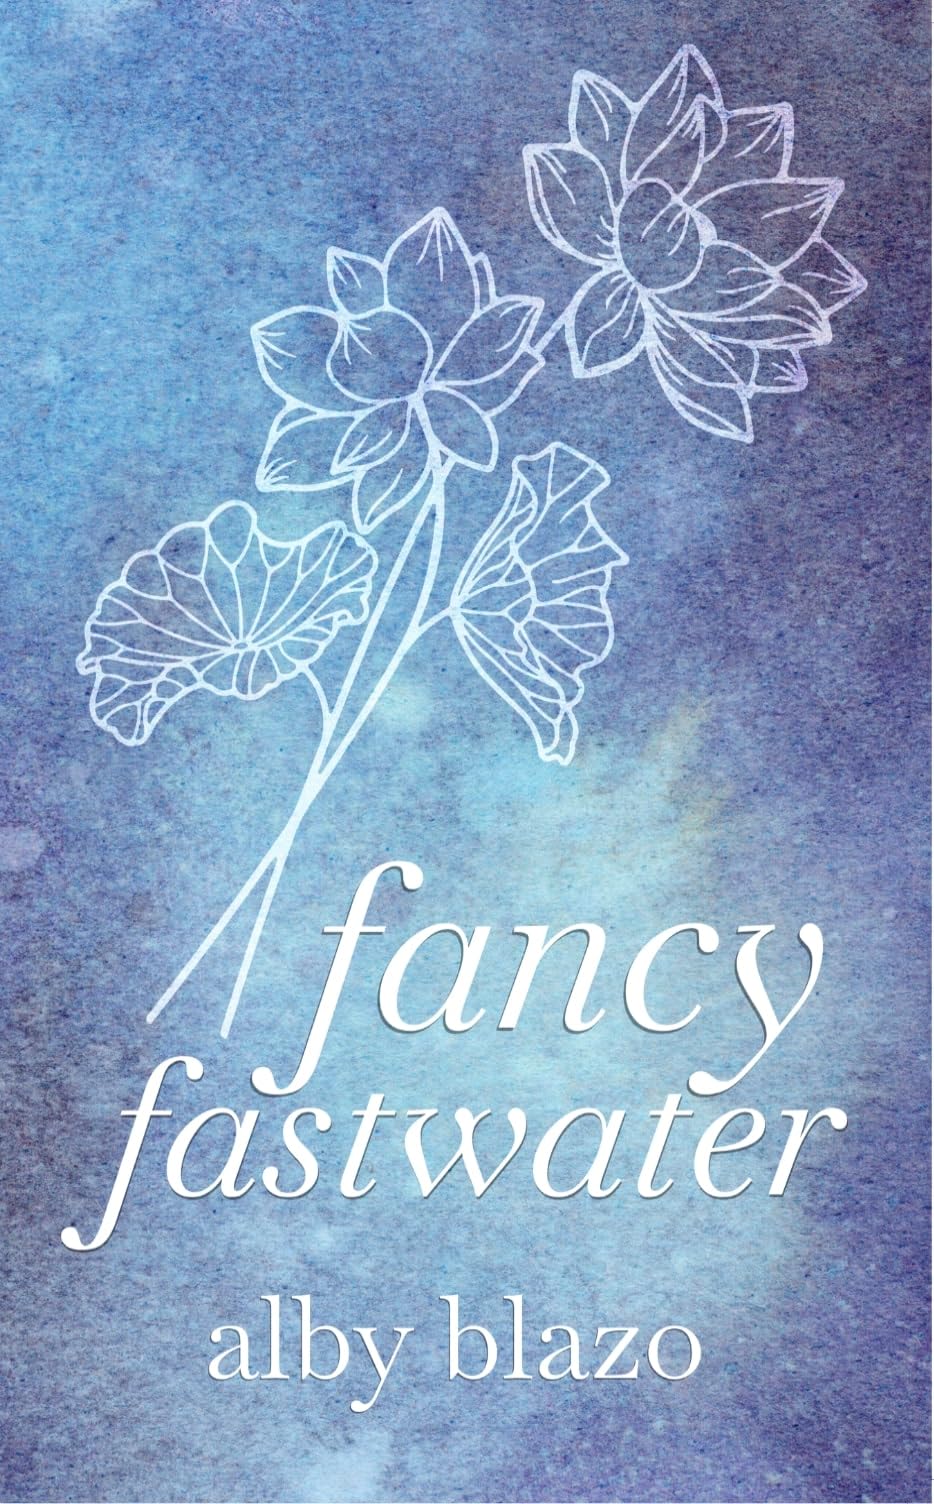 Fancy Fastwater